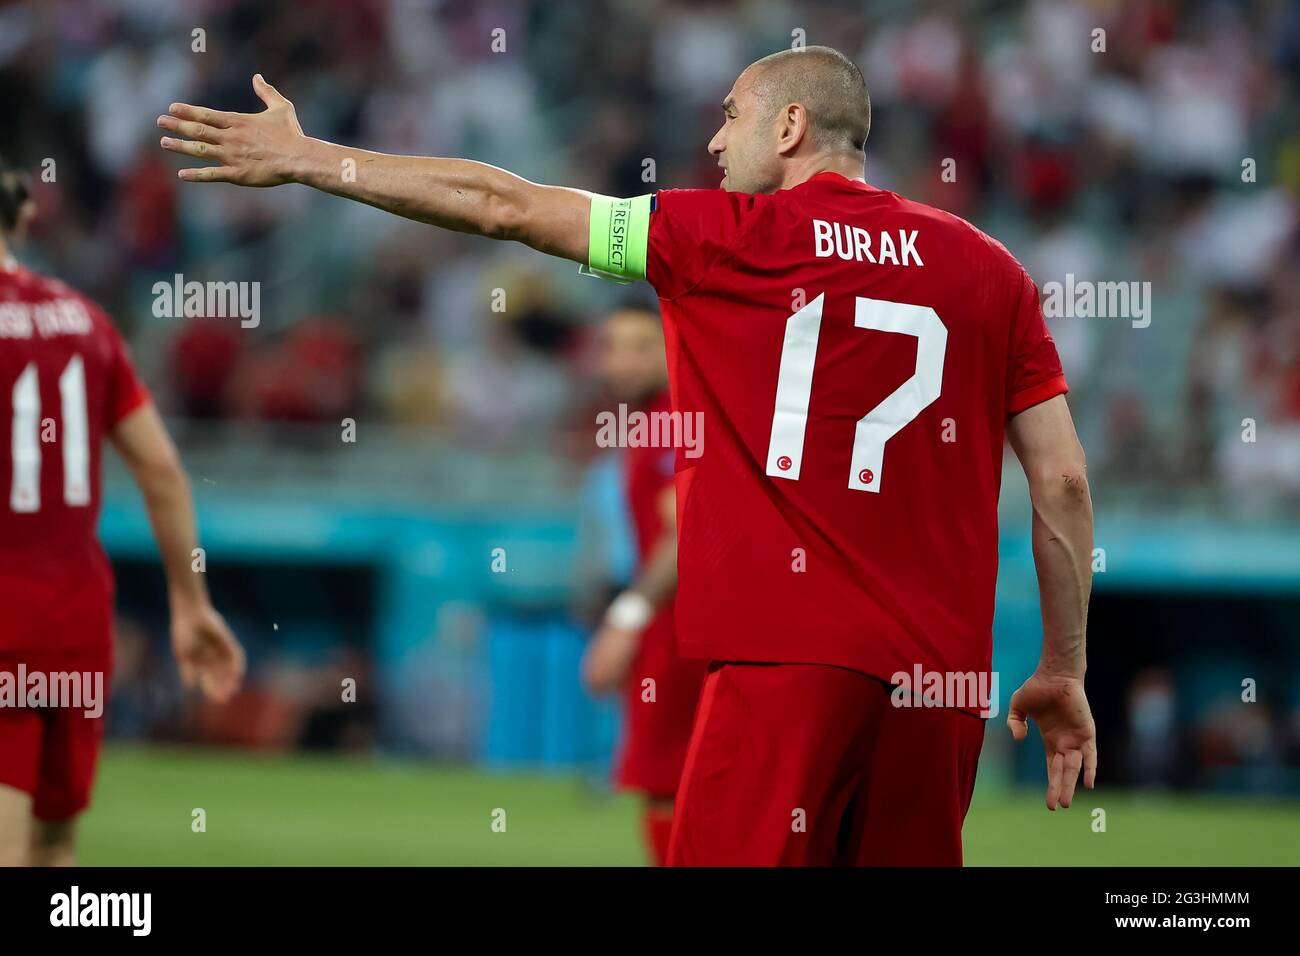 Il Burak Yilmaz in Turchia reagisce durante la partita UEFA Euro 2020 del Gruppo A allo stadio olimpico di Baku in Azerbaigian. Data immagine: Mercoledì 16 giugno 2021. Foto Stock